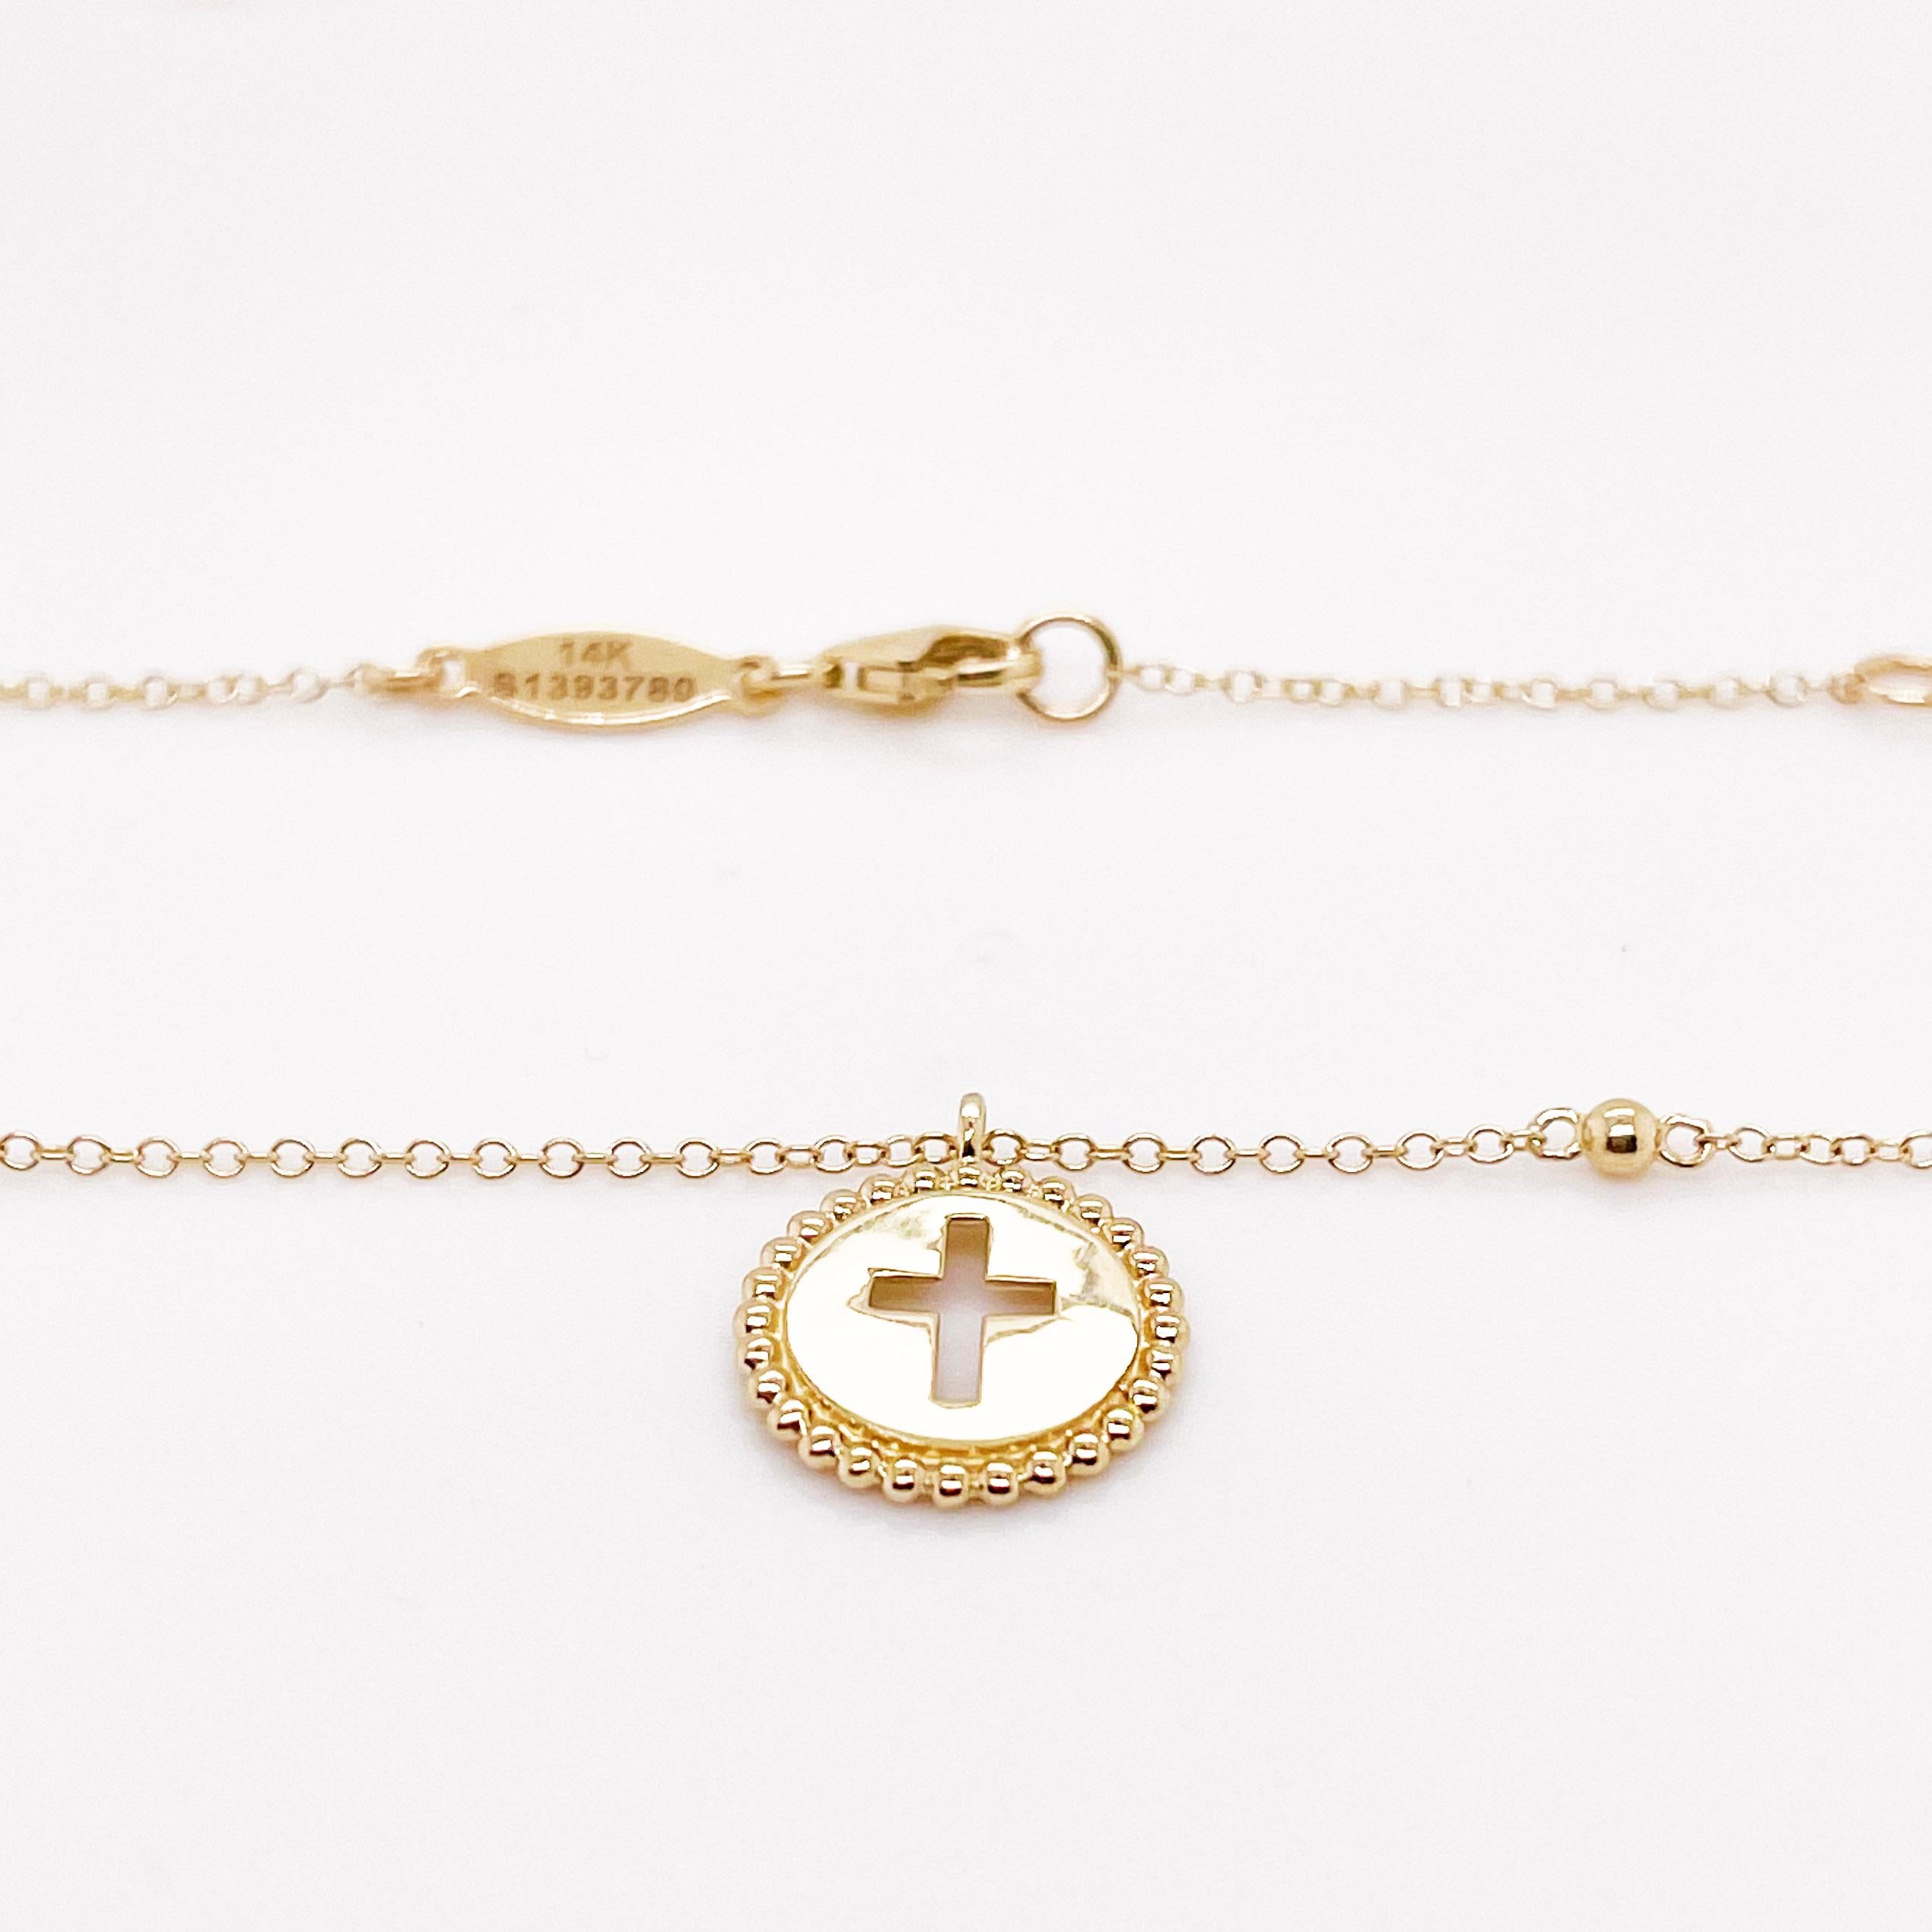 Ce superbe collier en forme de croix donne une nouvelle tournure à la croix traditionnelle que les amoureux portent depuis des années. La magnifique découpe de la croix est entourée d'or jaune 14 carats avec des bords perlés. Il s'agit d'une pièce